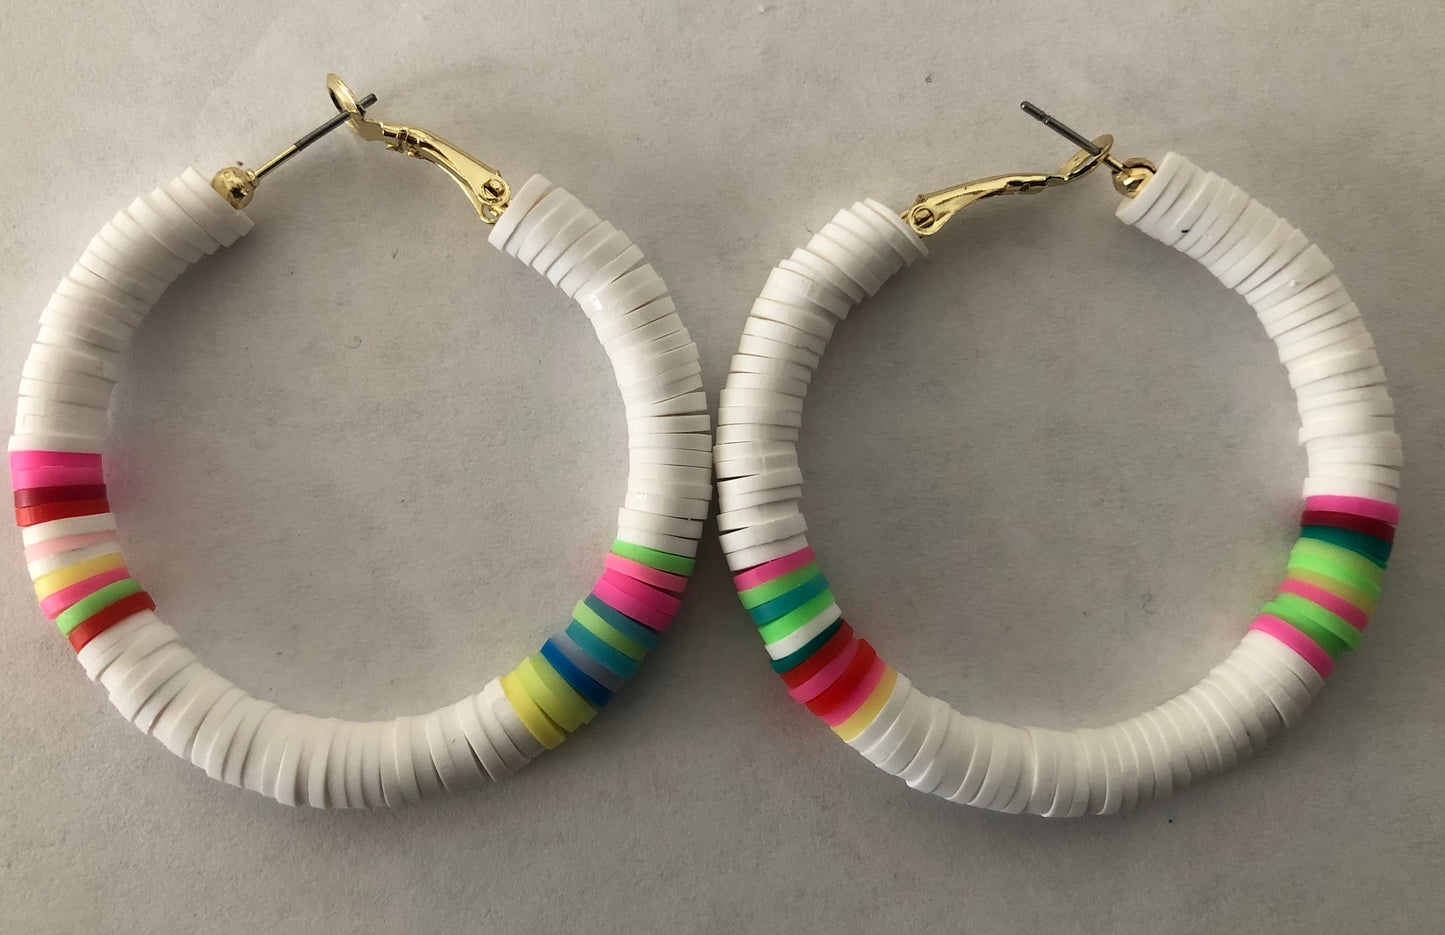 Beaded hoop earrings